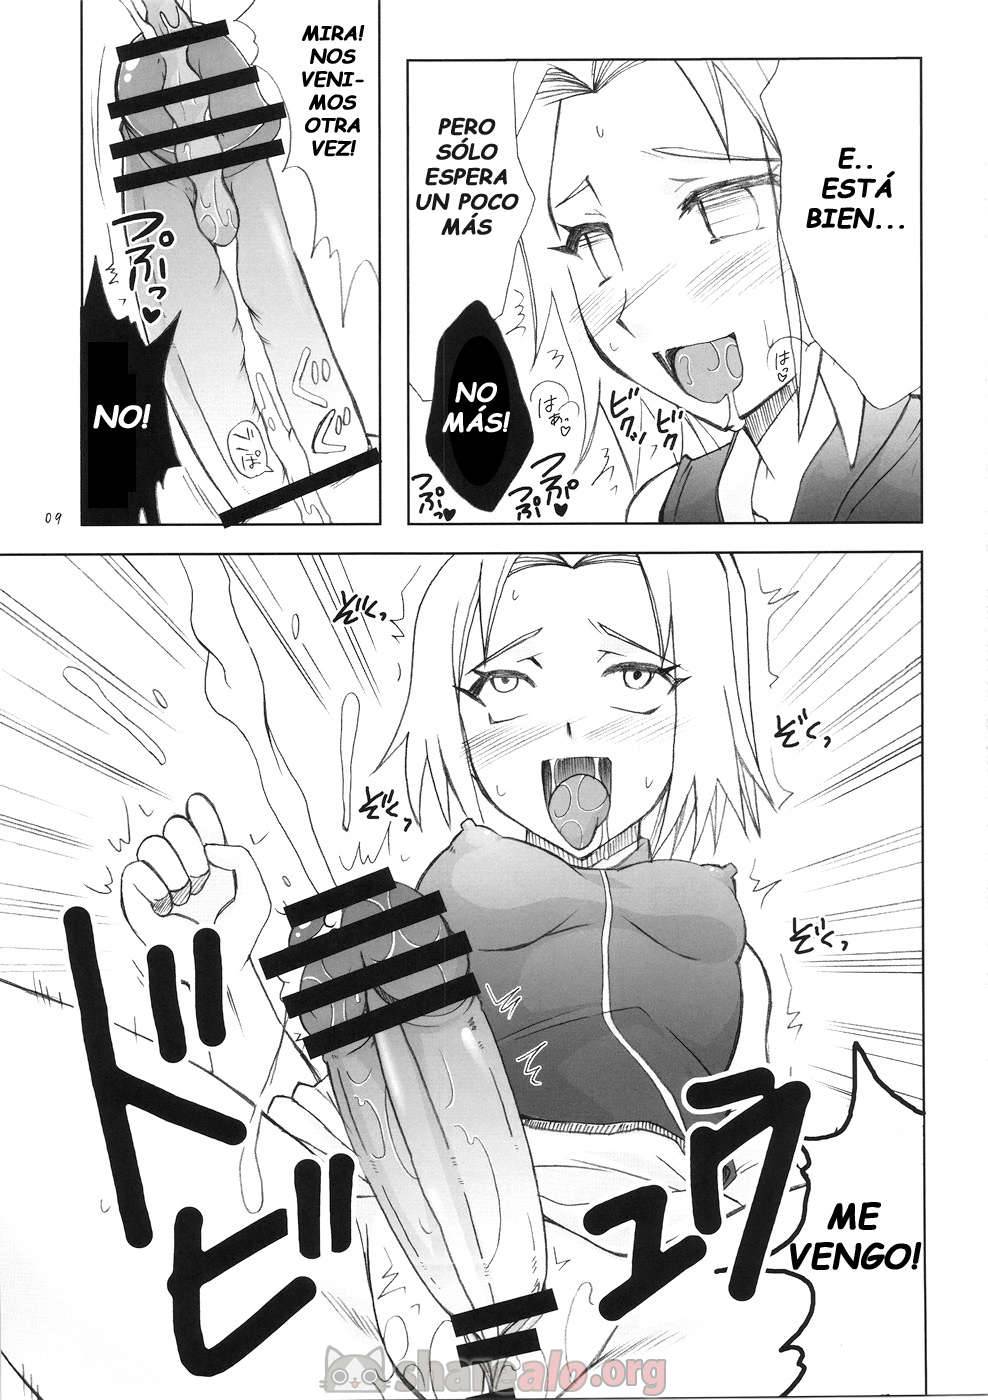 Futanari Kokoro Tenshin (Sakura se Folla a Ino Yamanaka) - 9 - Comics Porno - Hentai Manga - Cartoon XXX